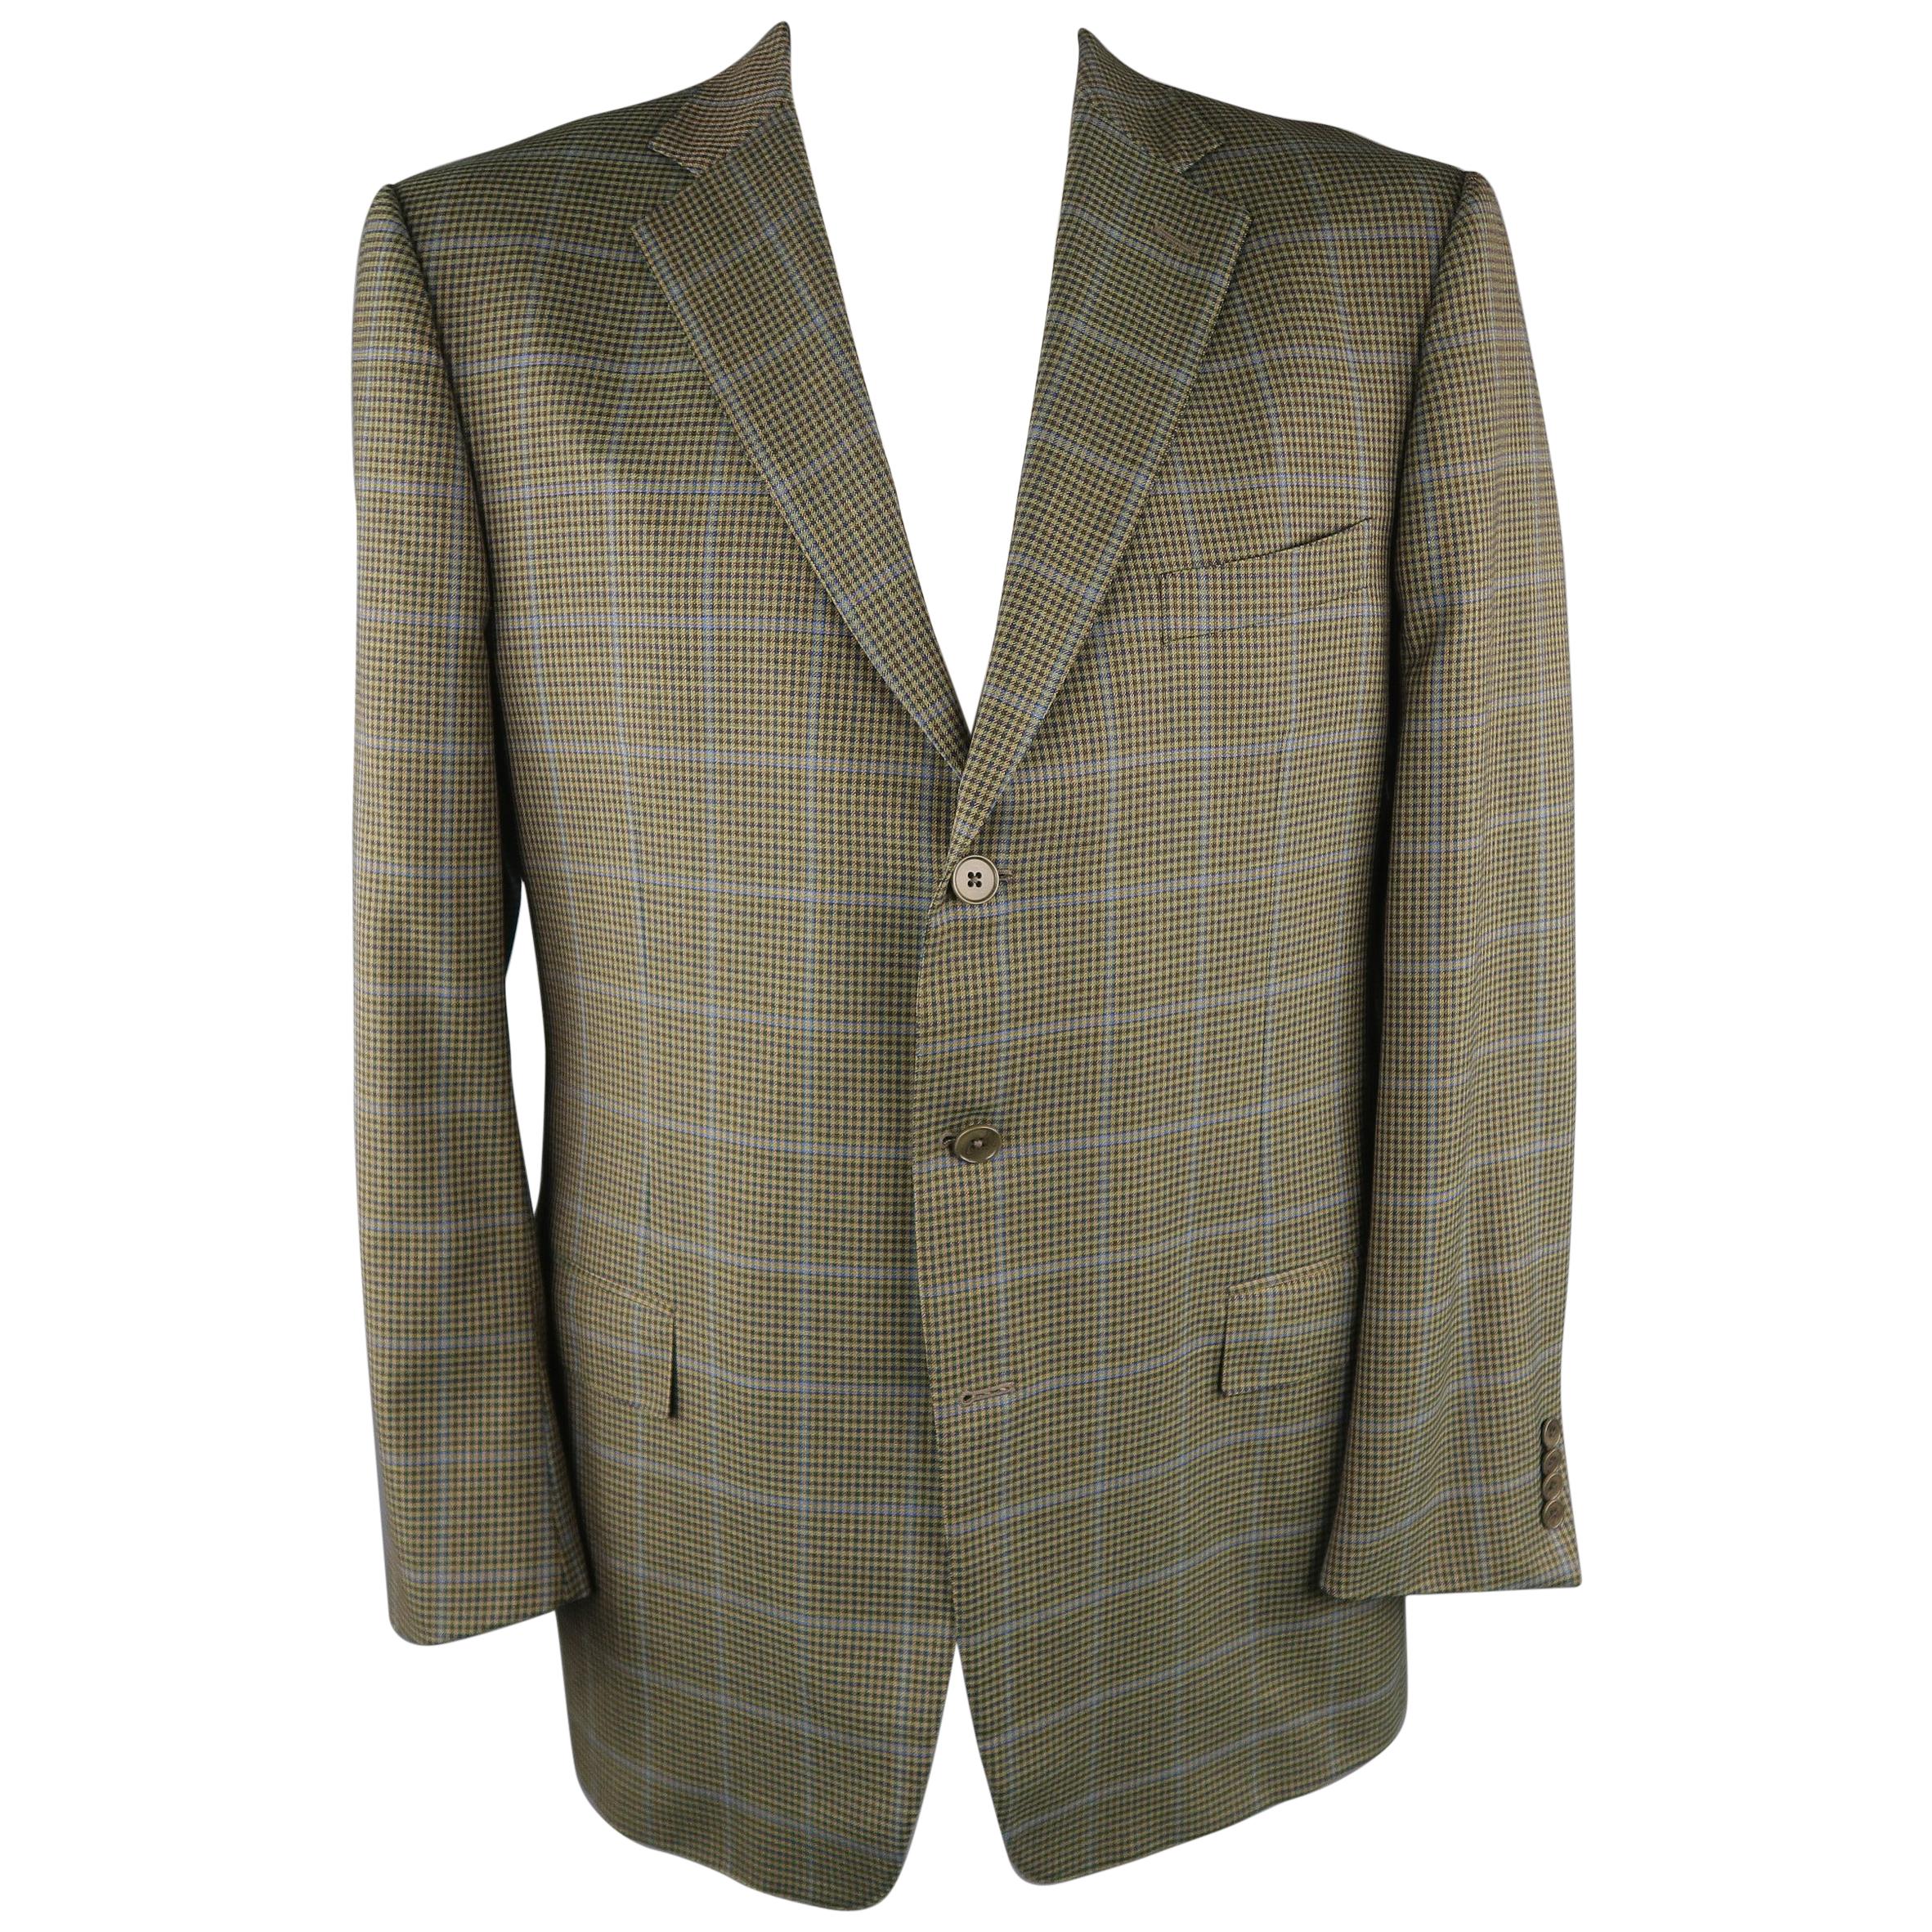 ERMENEGILDO ZEGNA 48 Long Olive Solid Wool Sport Coat